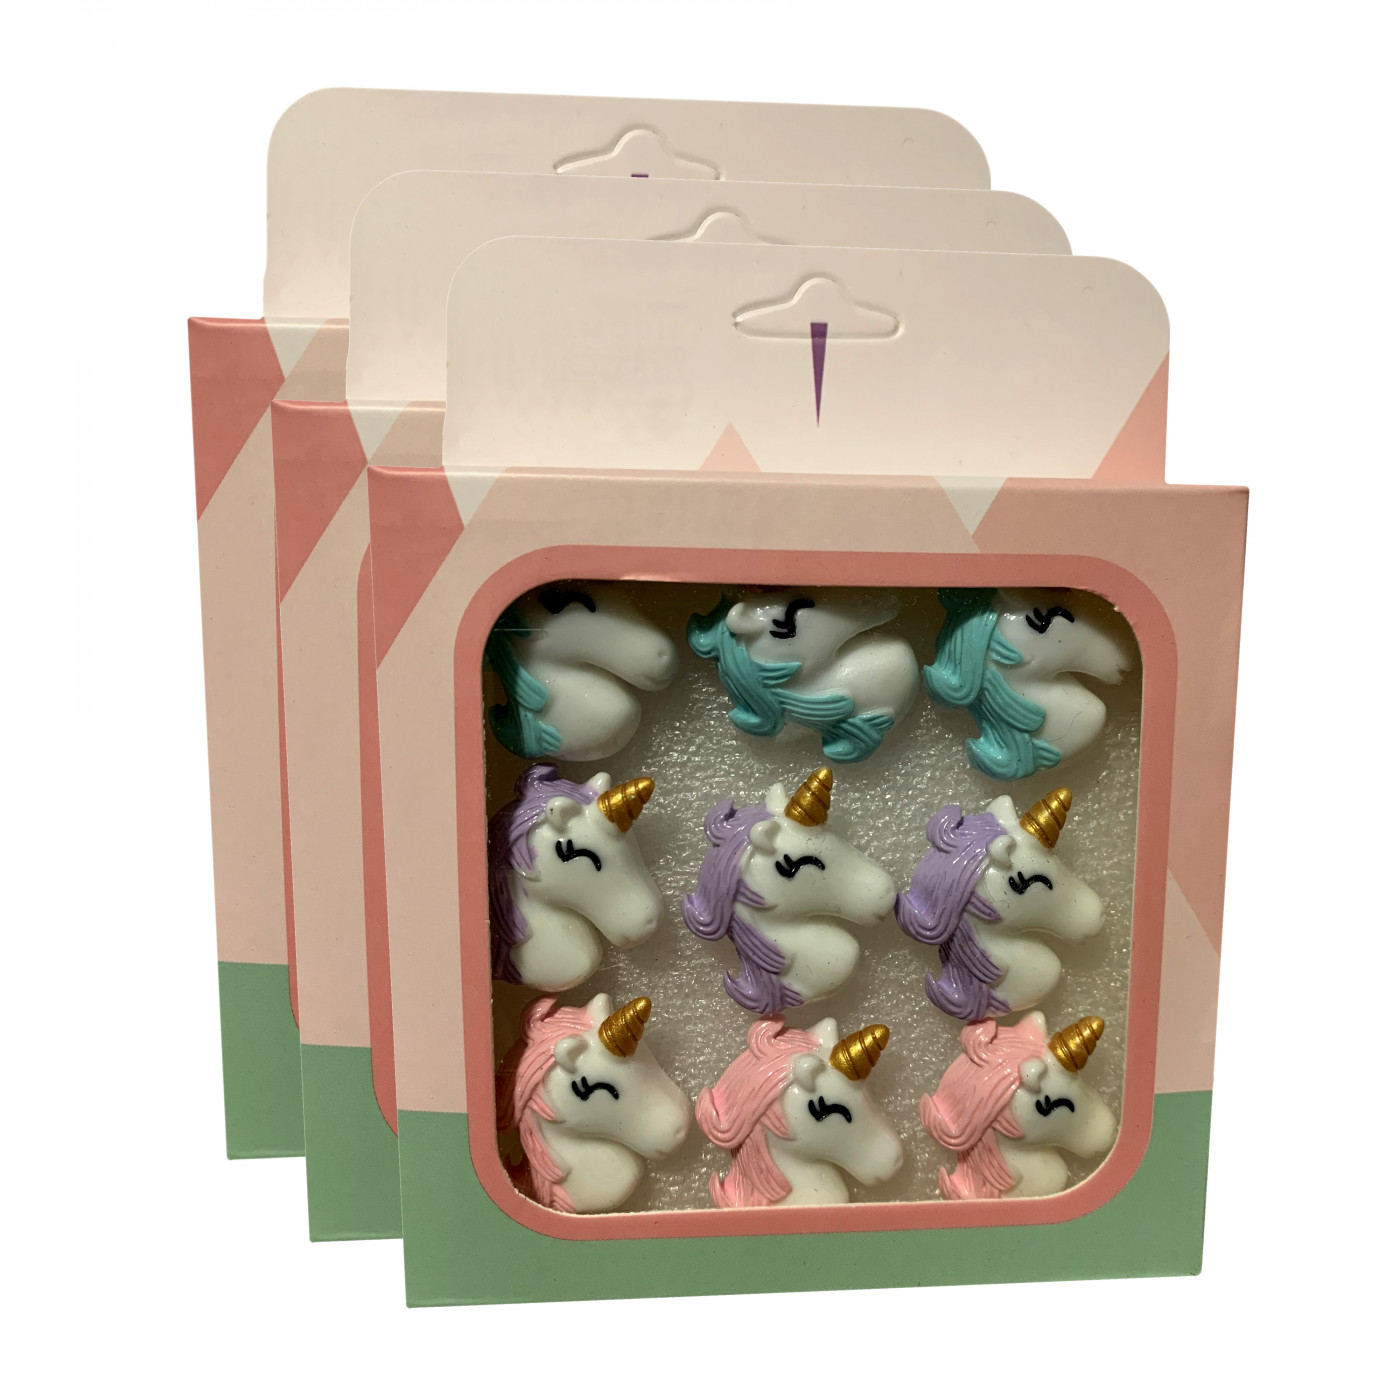 Set van 27 leuke punaises in doosjes (model: eenhoorn1)